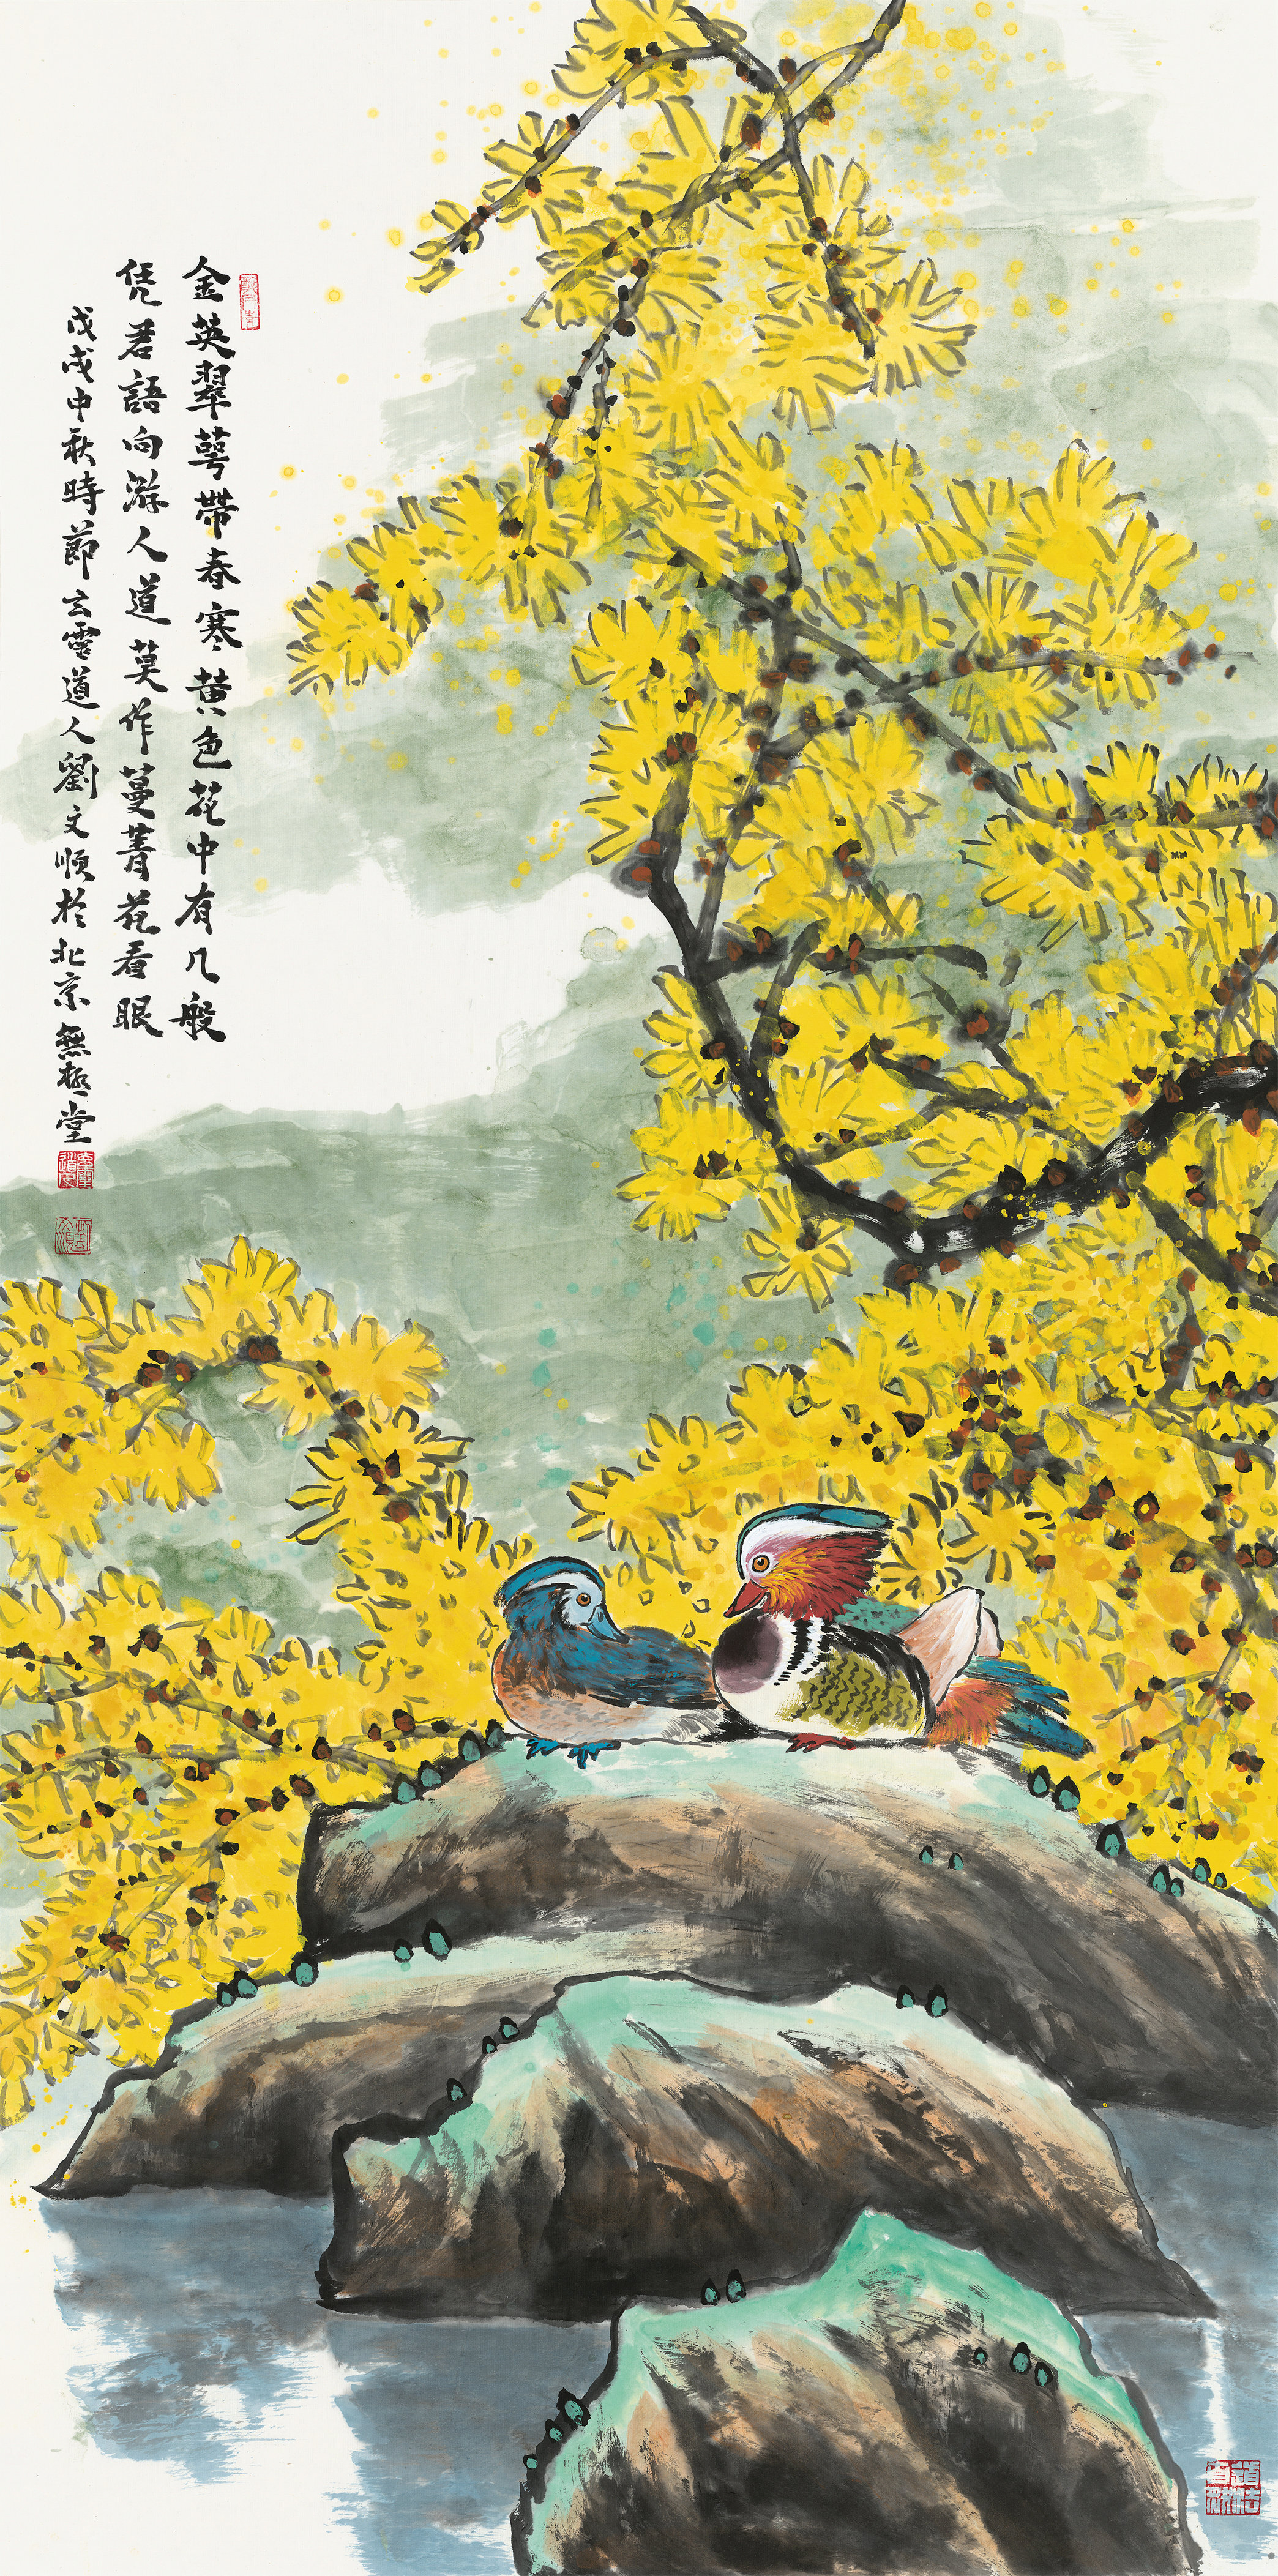 刘文顺——中国书画代表人物,向2021全国两会献礼!